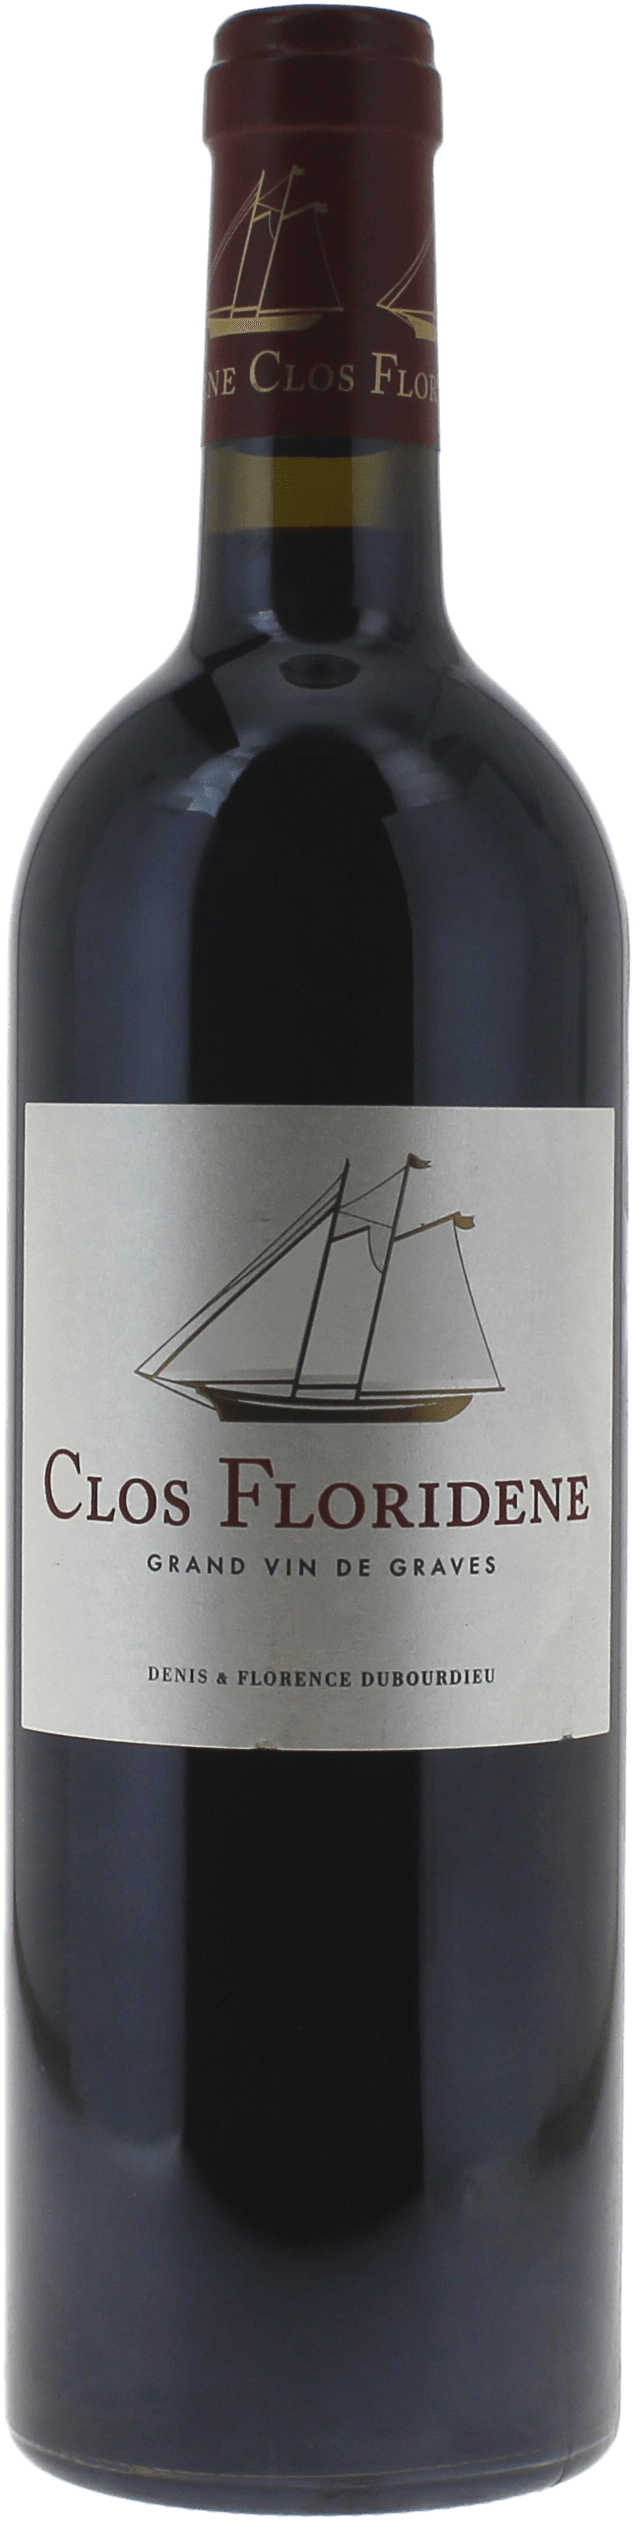 Clos floridne rouge 2015  Graves, Bordeaux rouge